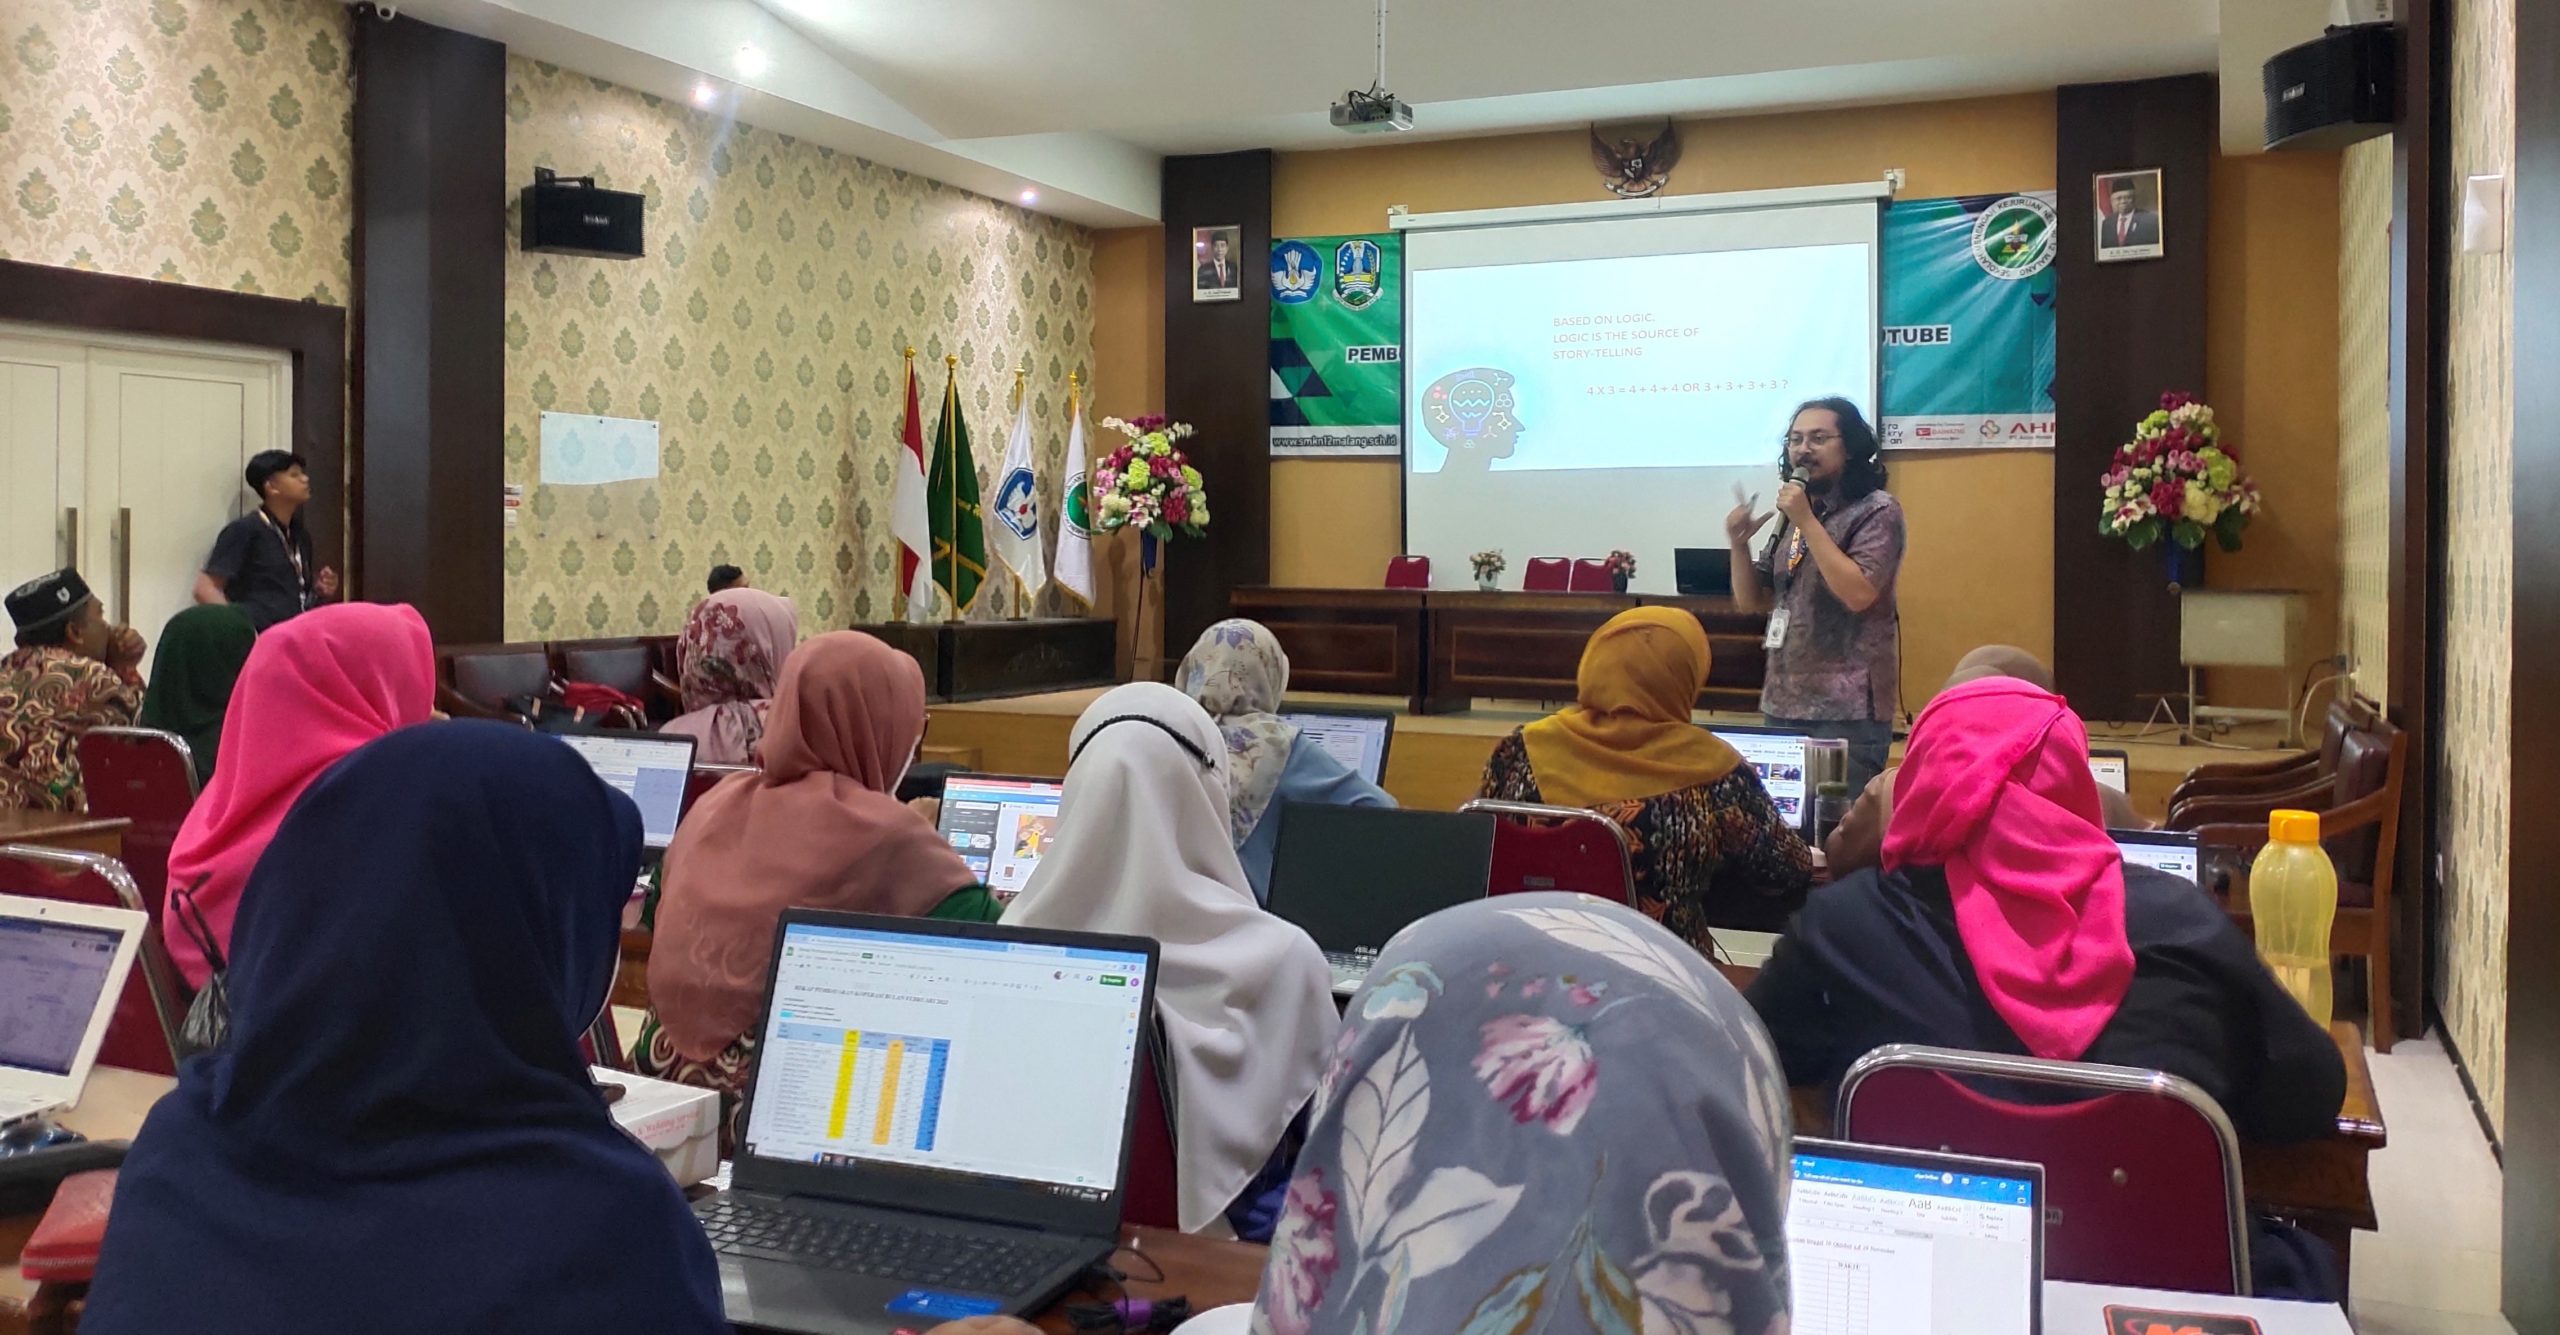 Tambah Kompetesi Guru, SMK Negeri 12 Malang Gelar Pelatihan Pembuatan Konten Video Pembelajaran Dengan Platform Youtube